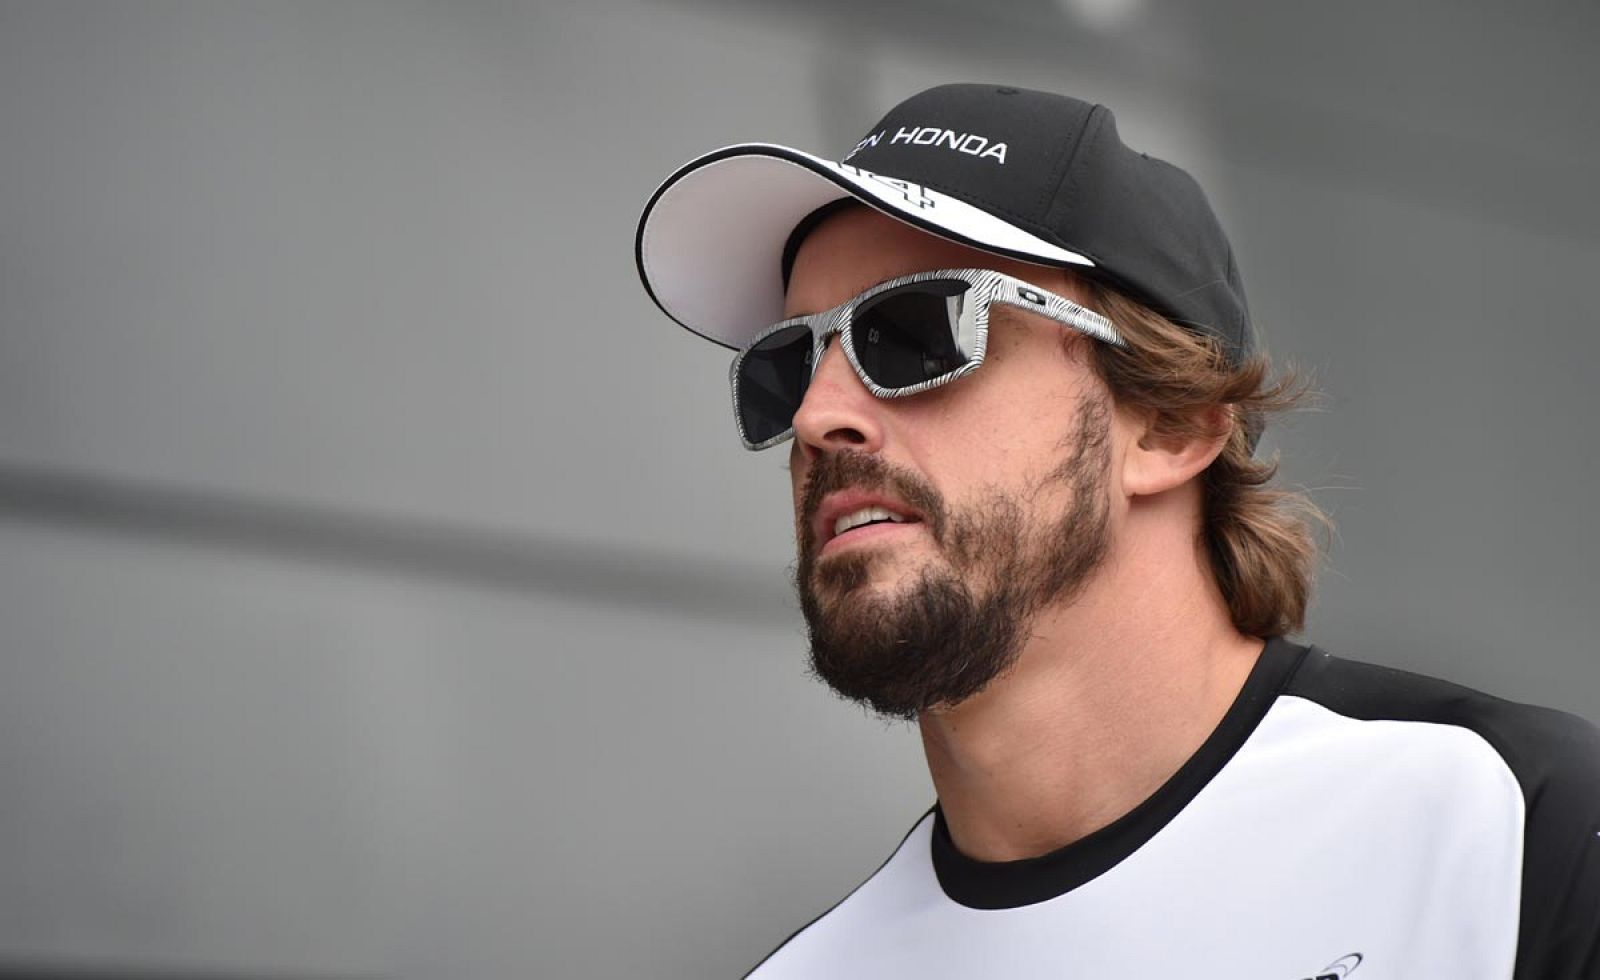 Alonso se ha unido a las condolencias del mundo de la F1 por la muerte de Bianchi